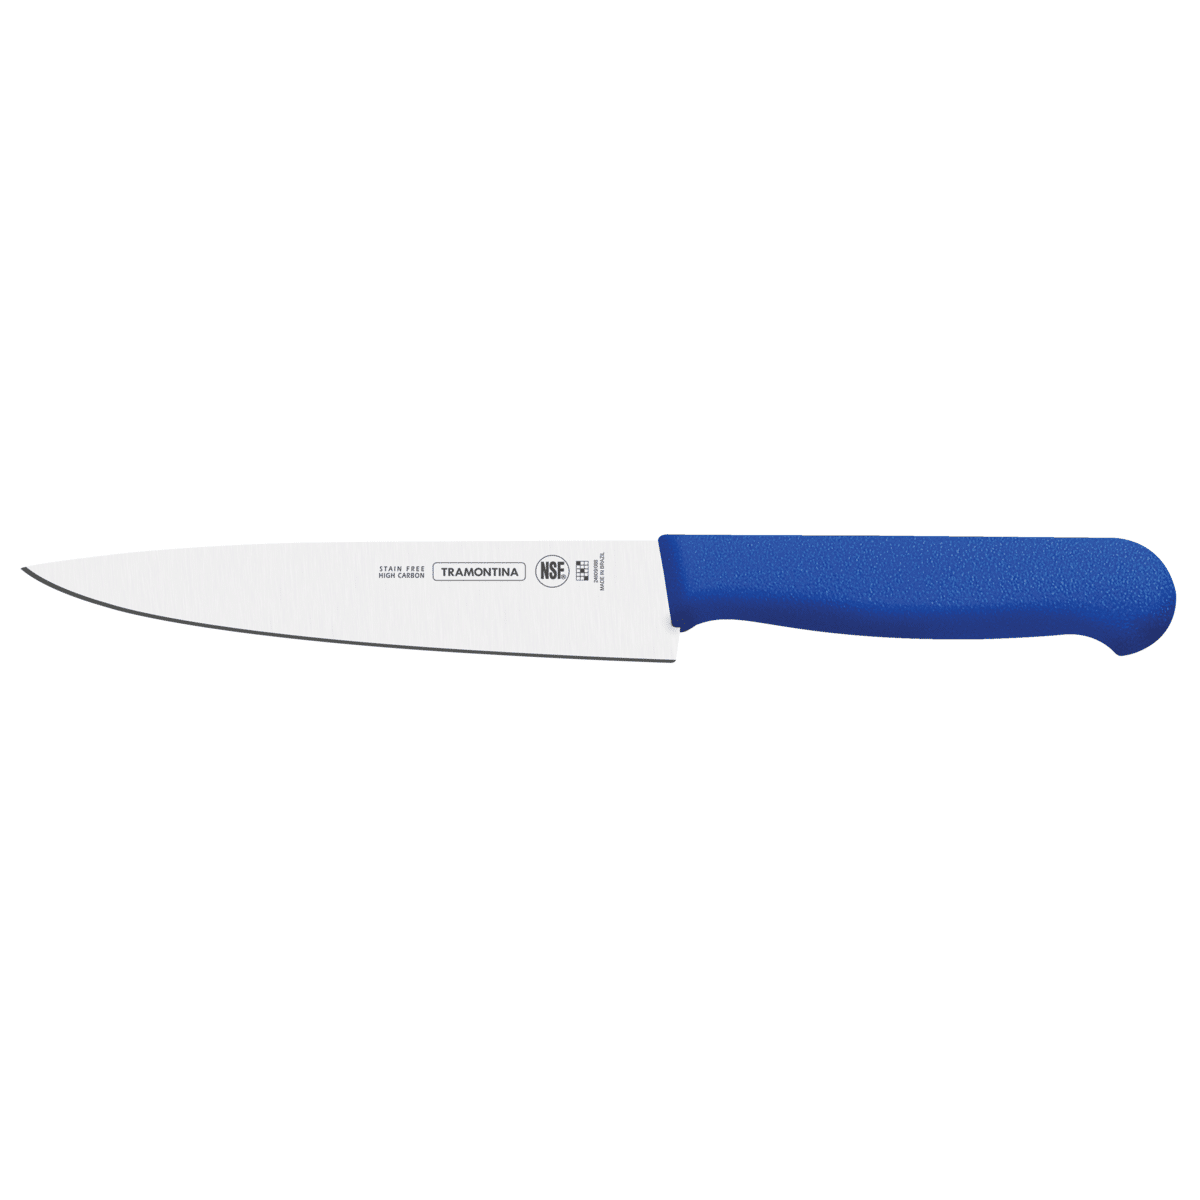 چاقوی 8 اینچ 24620018 برش گوشت با دسته آبی ترامونتینا